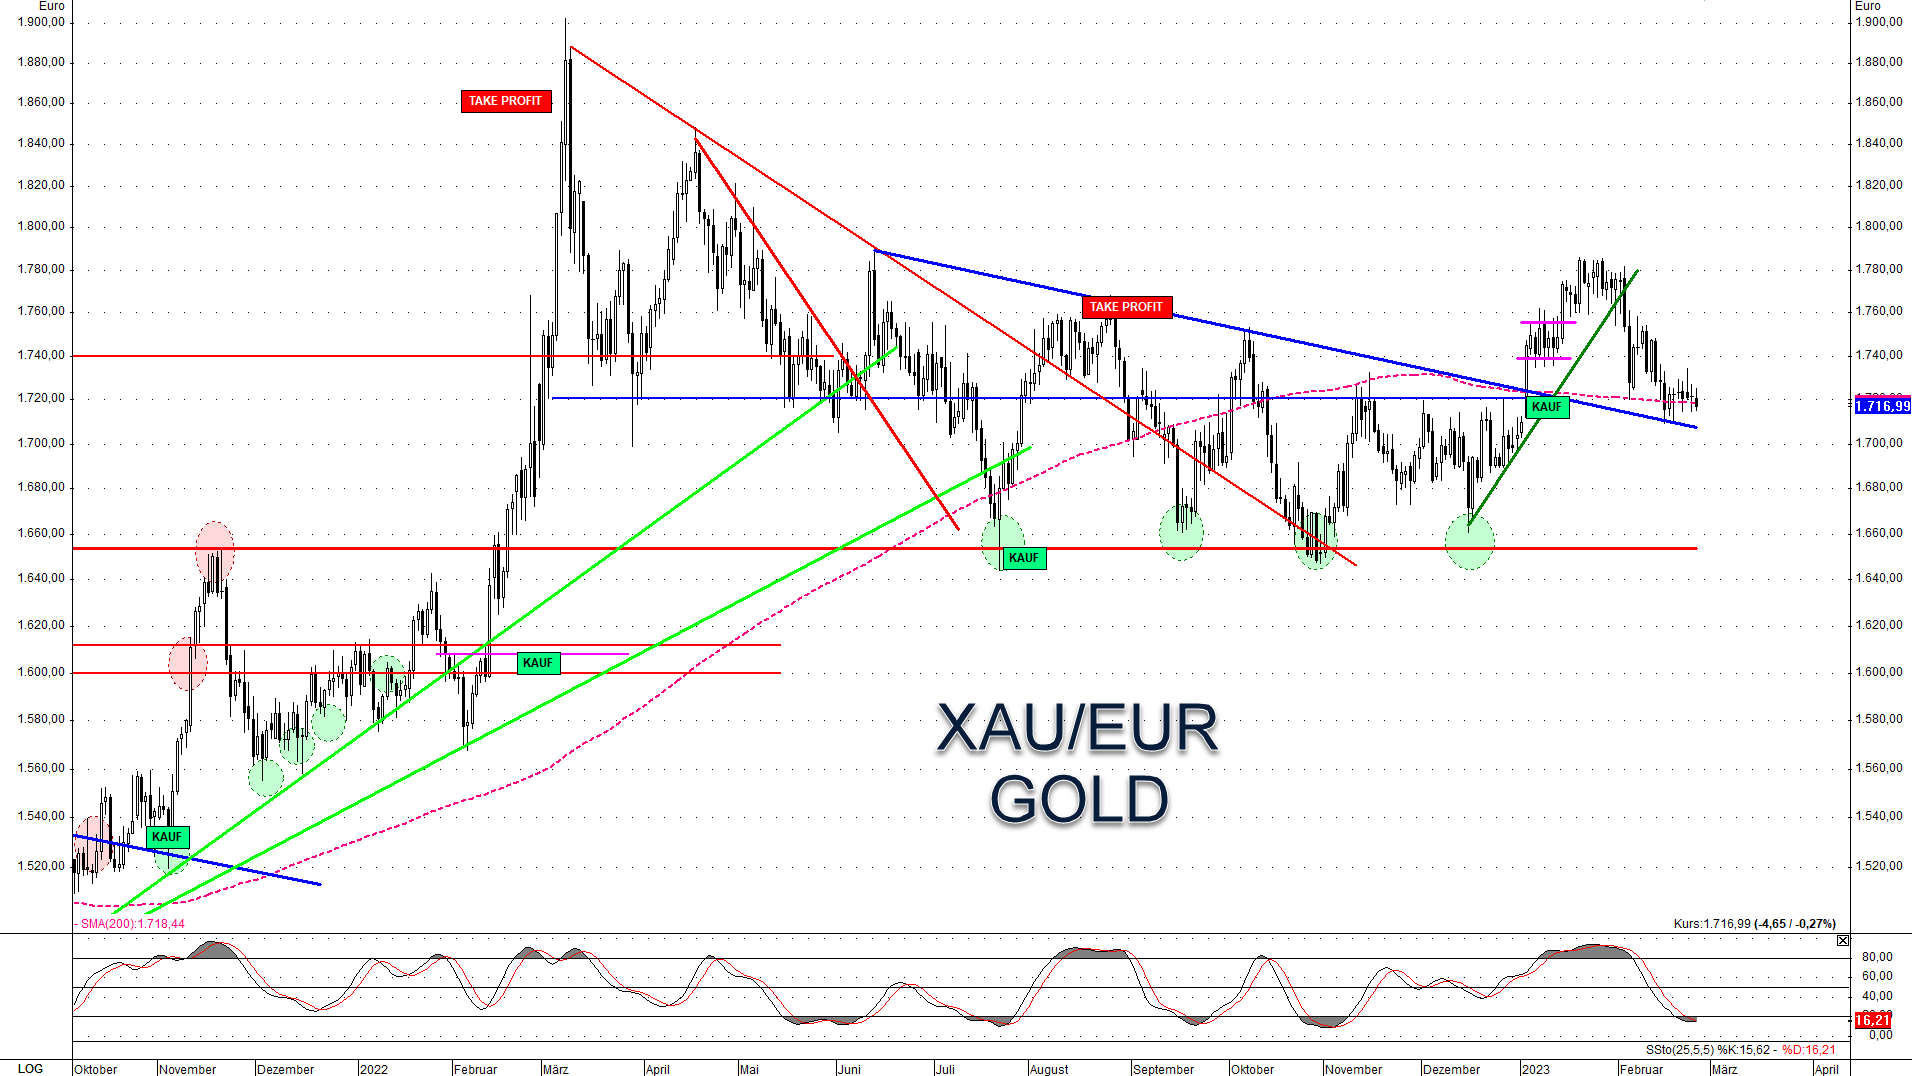 Goldpreis in Euro relativ stark